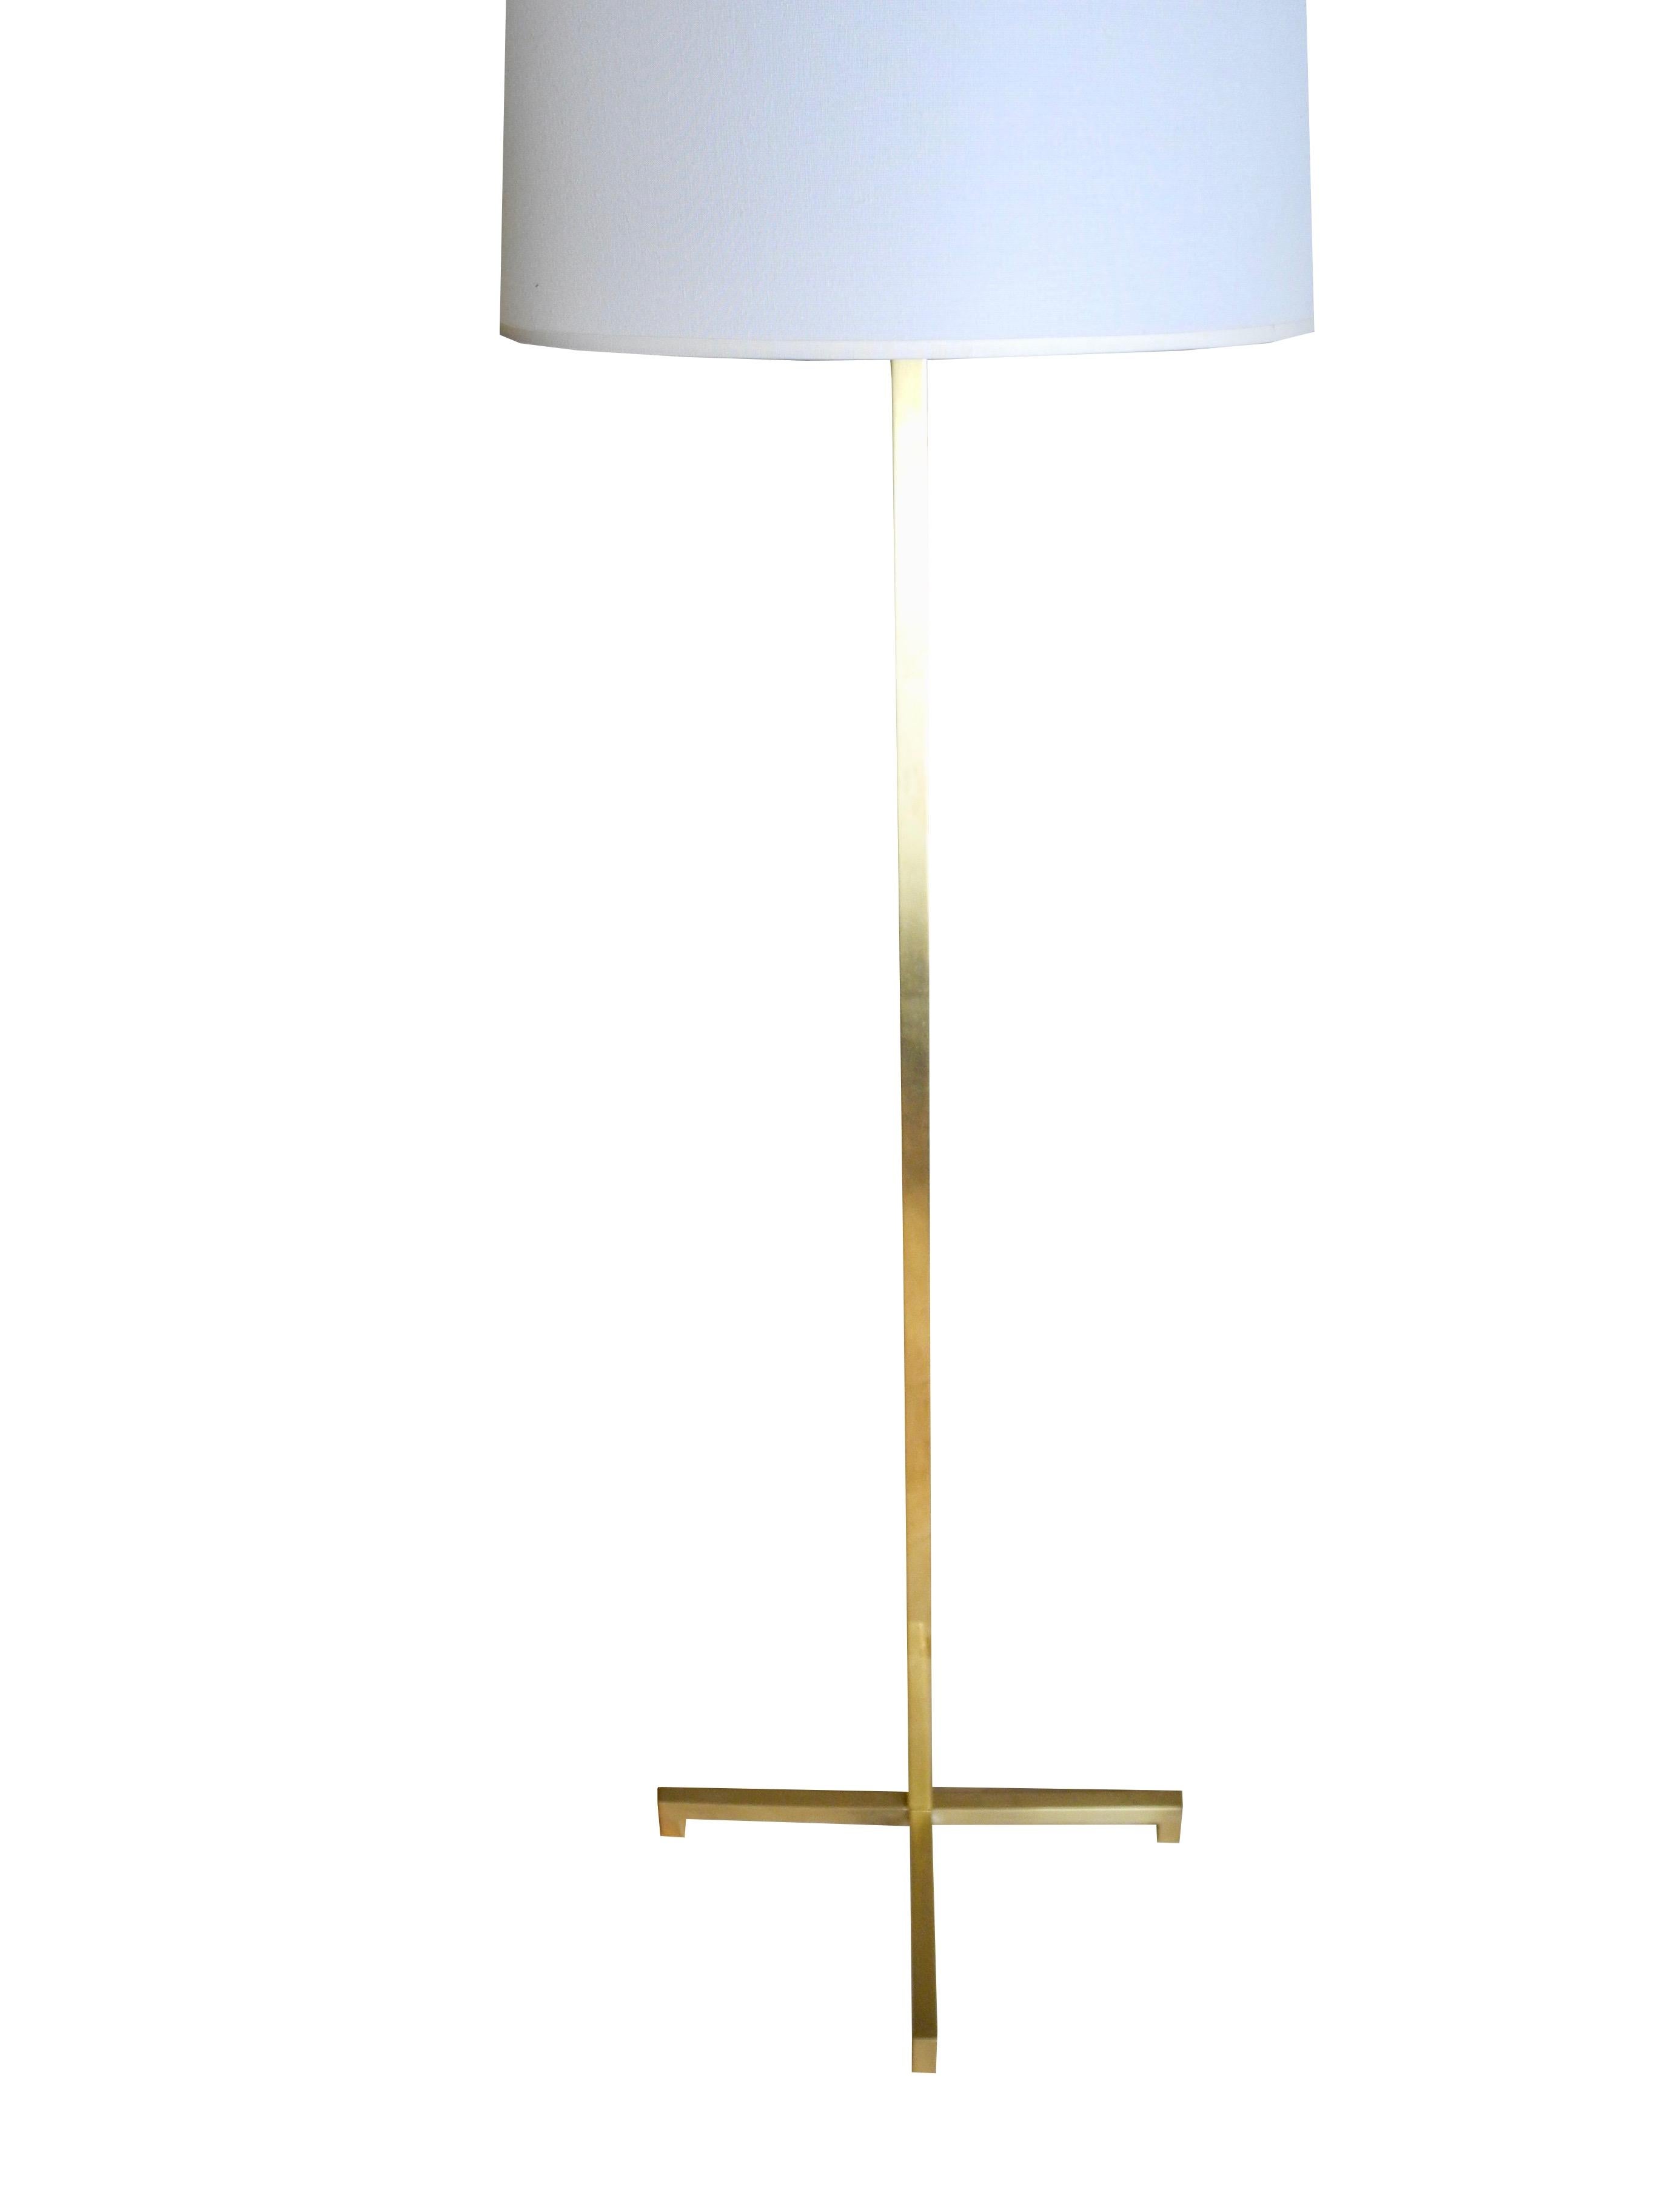 This modern golden brass floor lamp is designed by T.H. Robsjohn-Gibbings for Hansen Lighting. The cross base measures 16.75